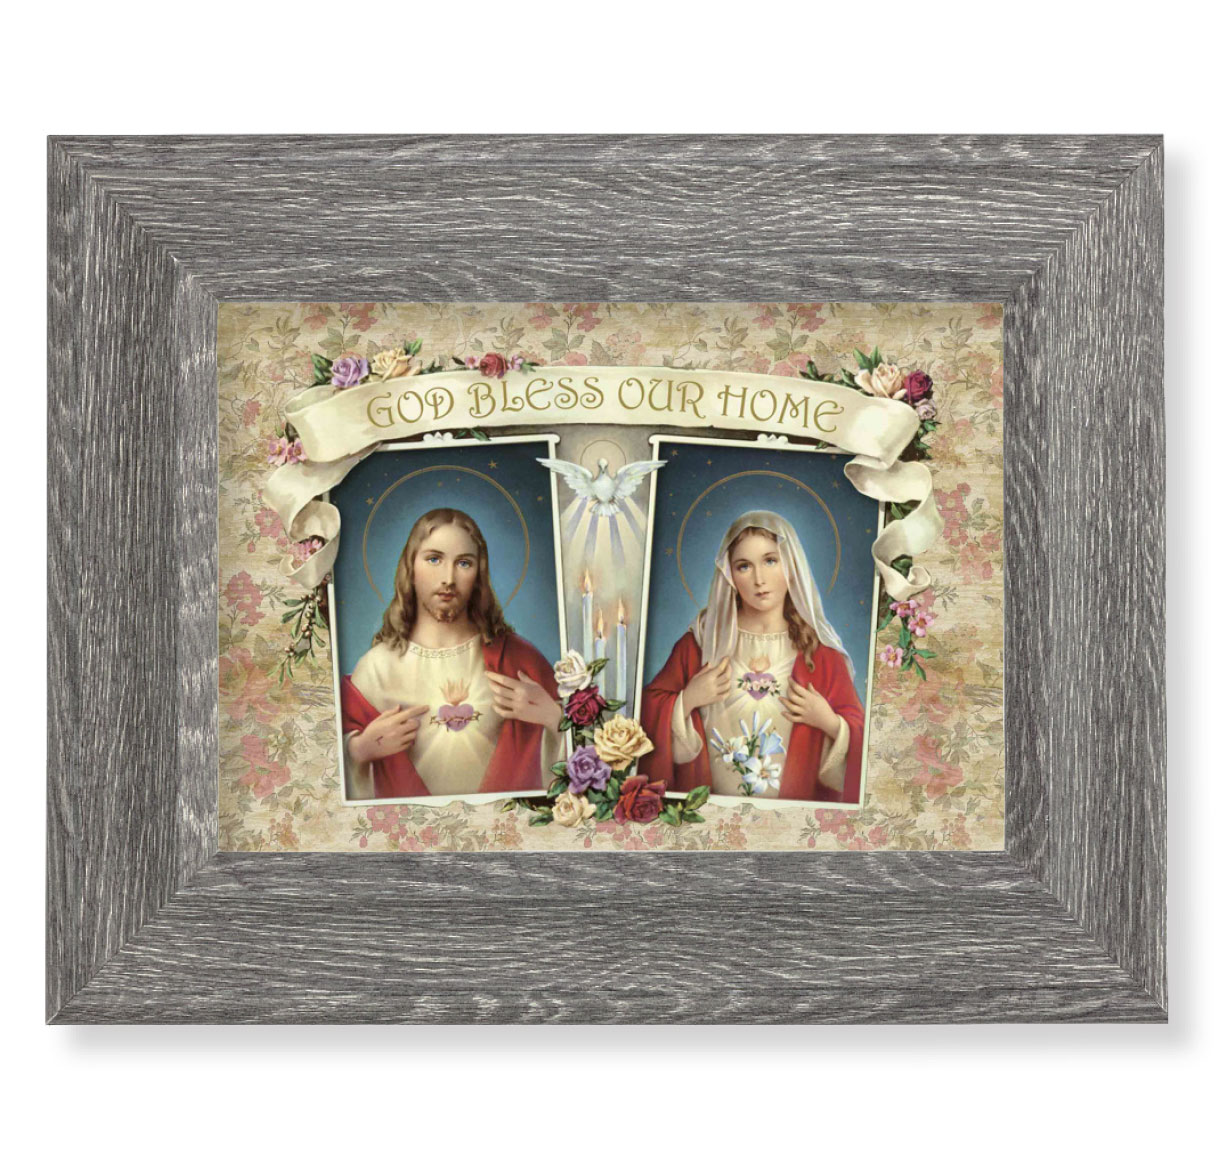 Print House Blessing - SHJ-IMH 5 x 7 inch Gray Framed